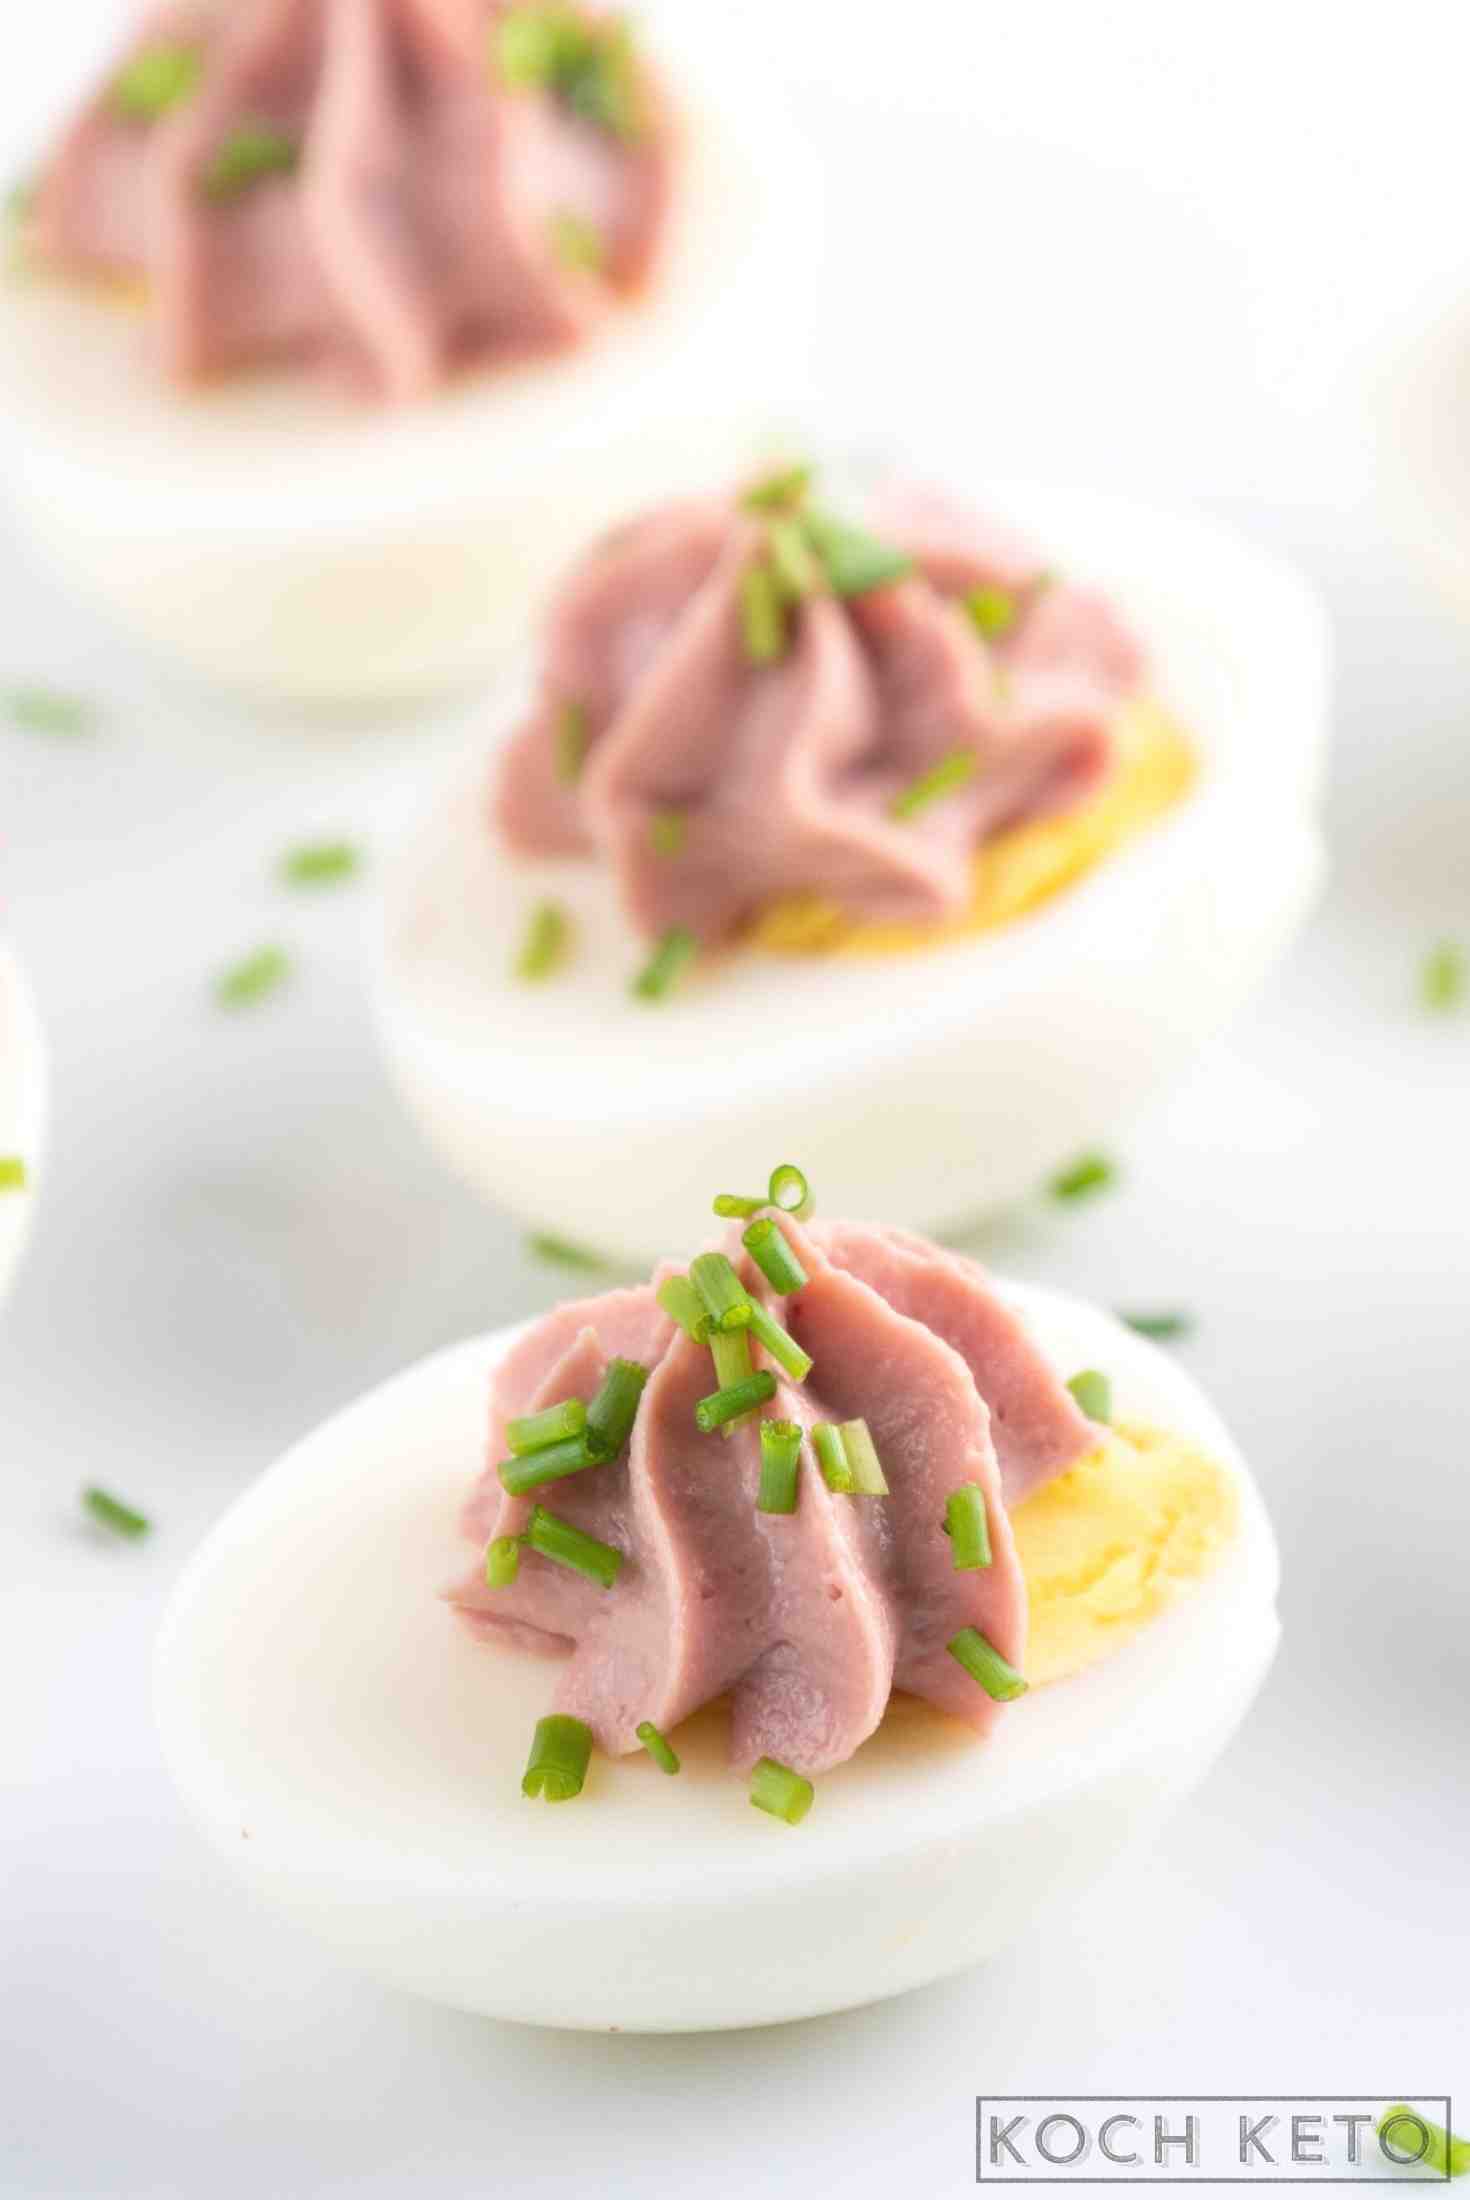 Nährstoffbombe & Keto Snack zum Abnehmen ohne Kohlenhydrate: Eier mit Leberwurst Image #1